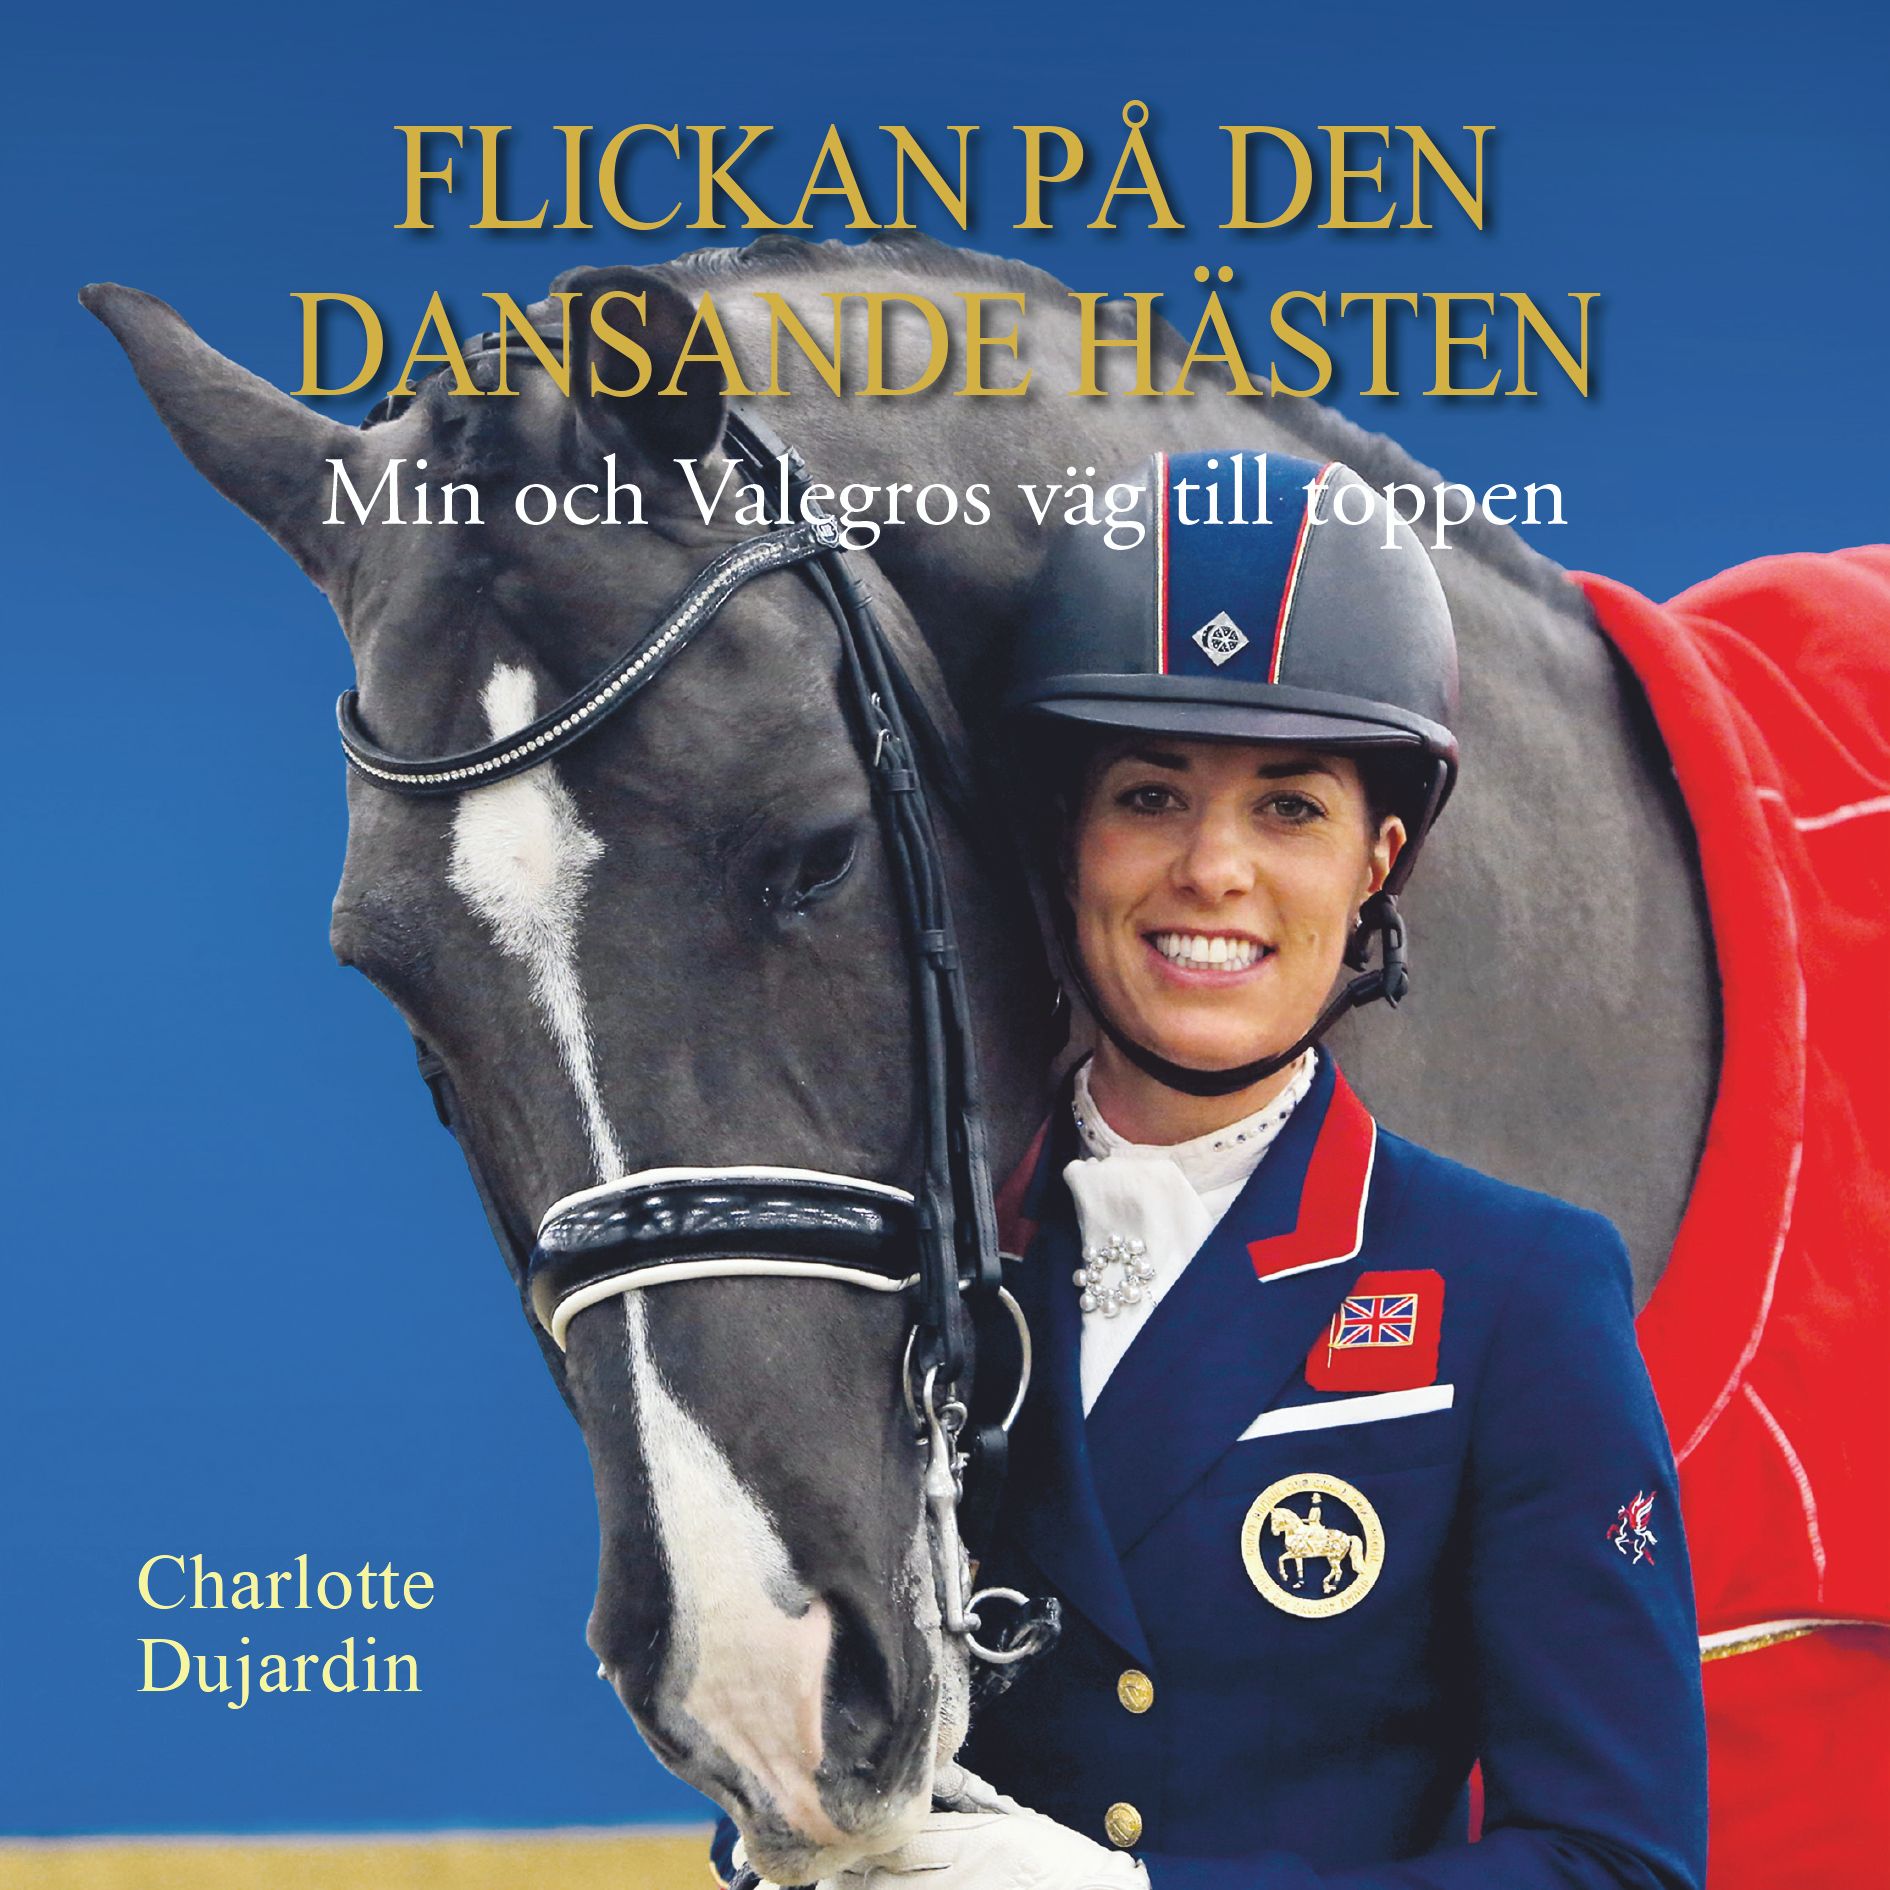 Flickan på den dansande hästen: min och Valegros väg till toppen, ljudbok av Charlotte Dujardin